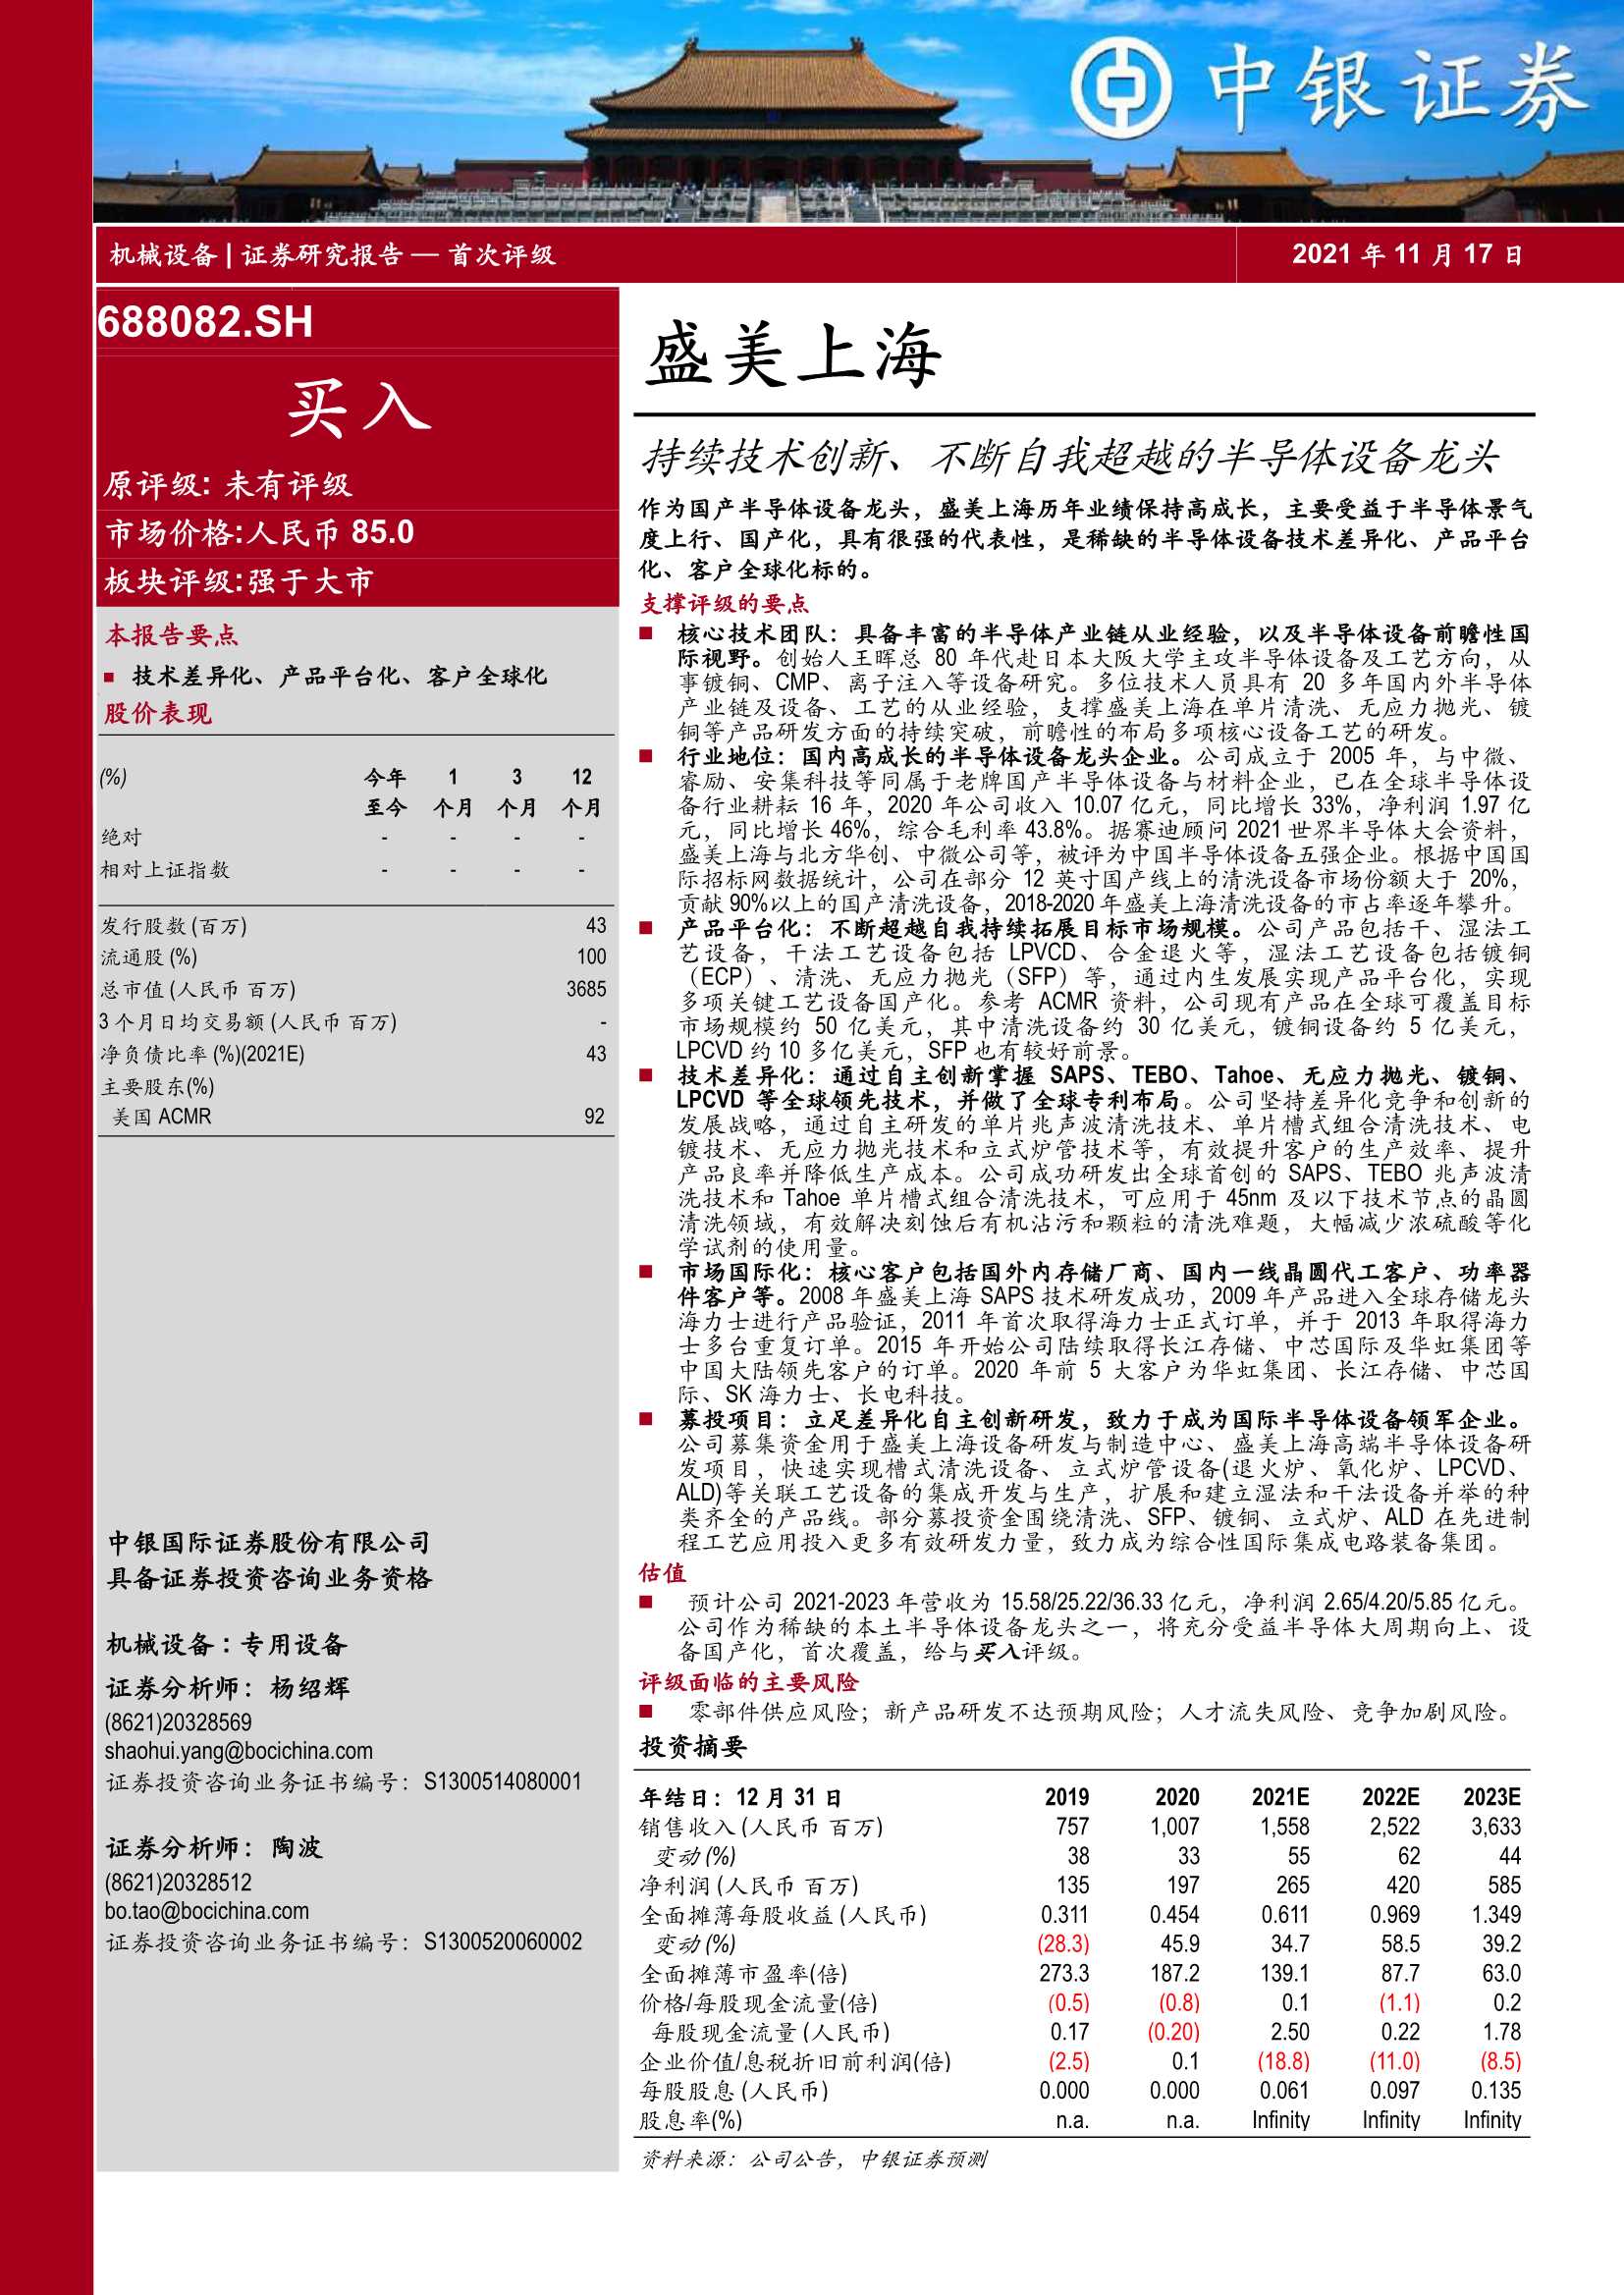 中银国际-盛美上海-688082-持续技术创新、不断自我超越的半导体设备龙头-20211117-36页